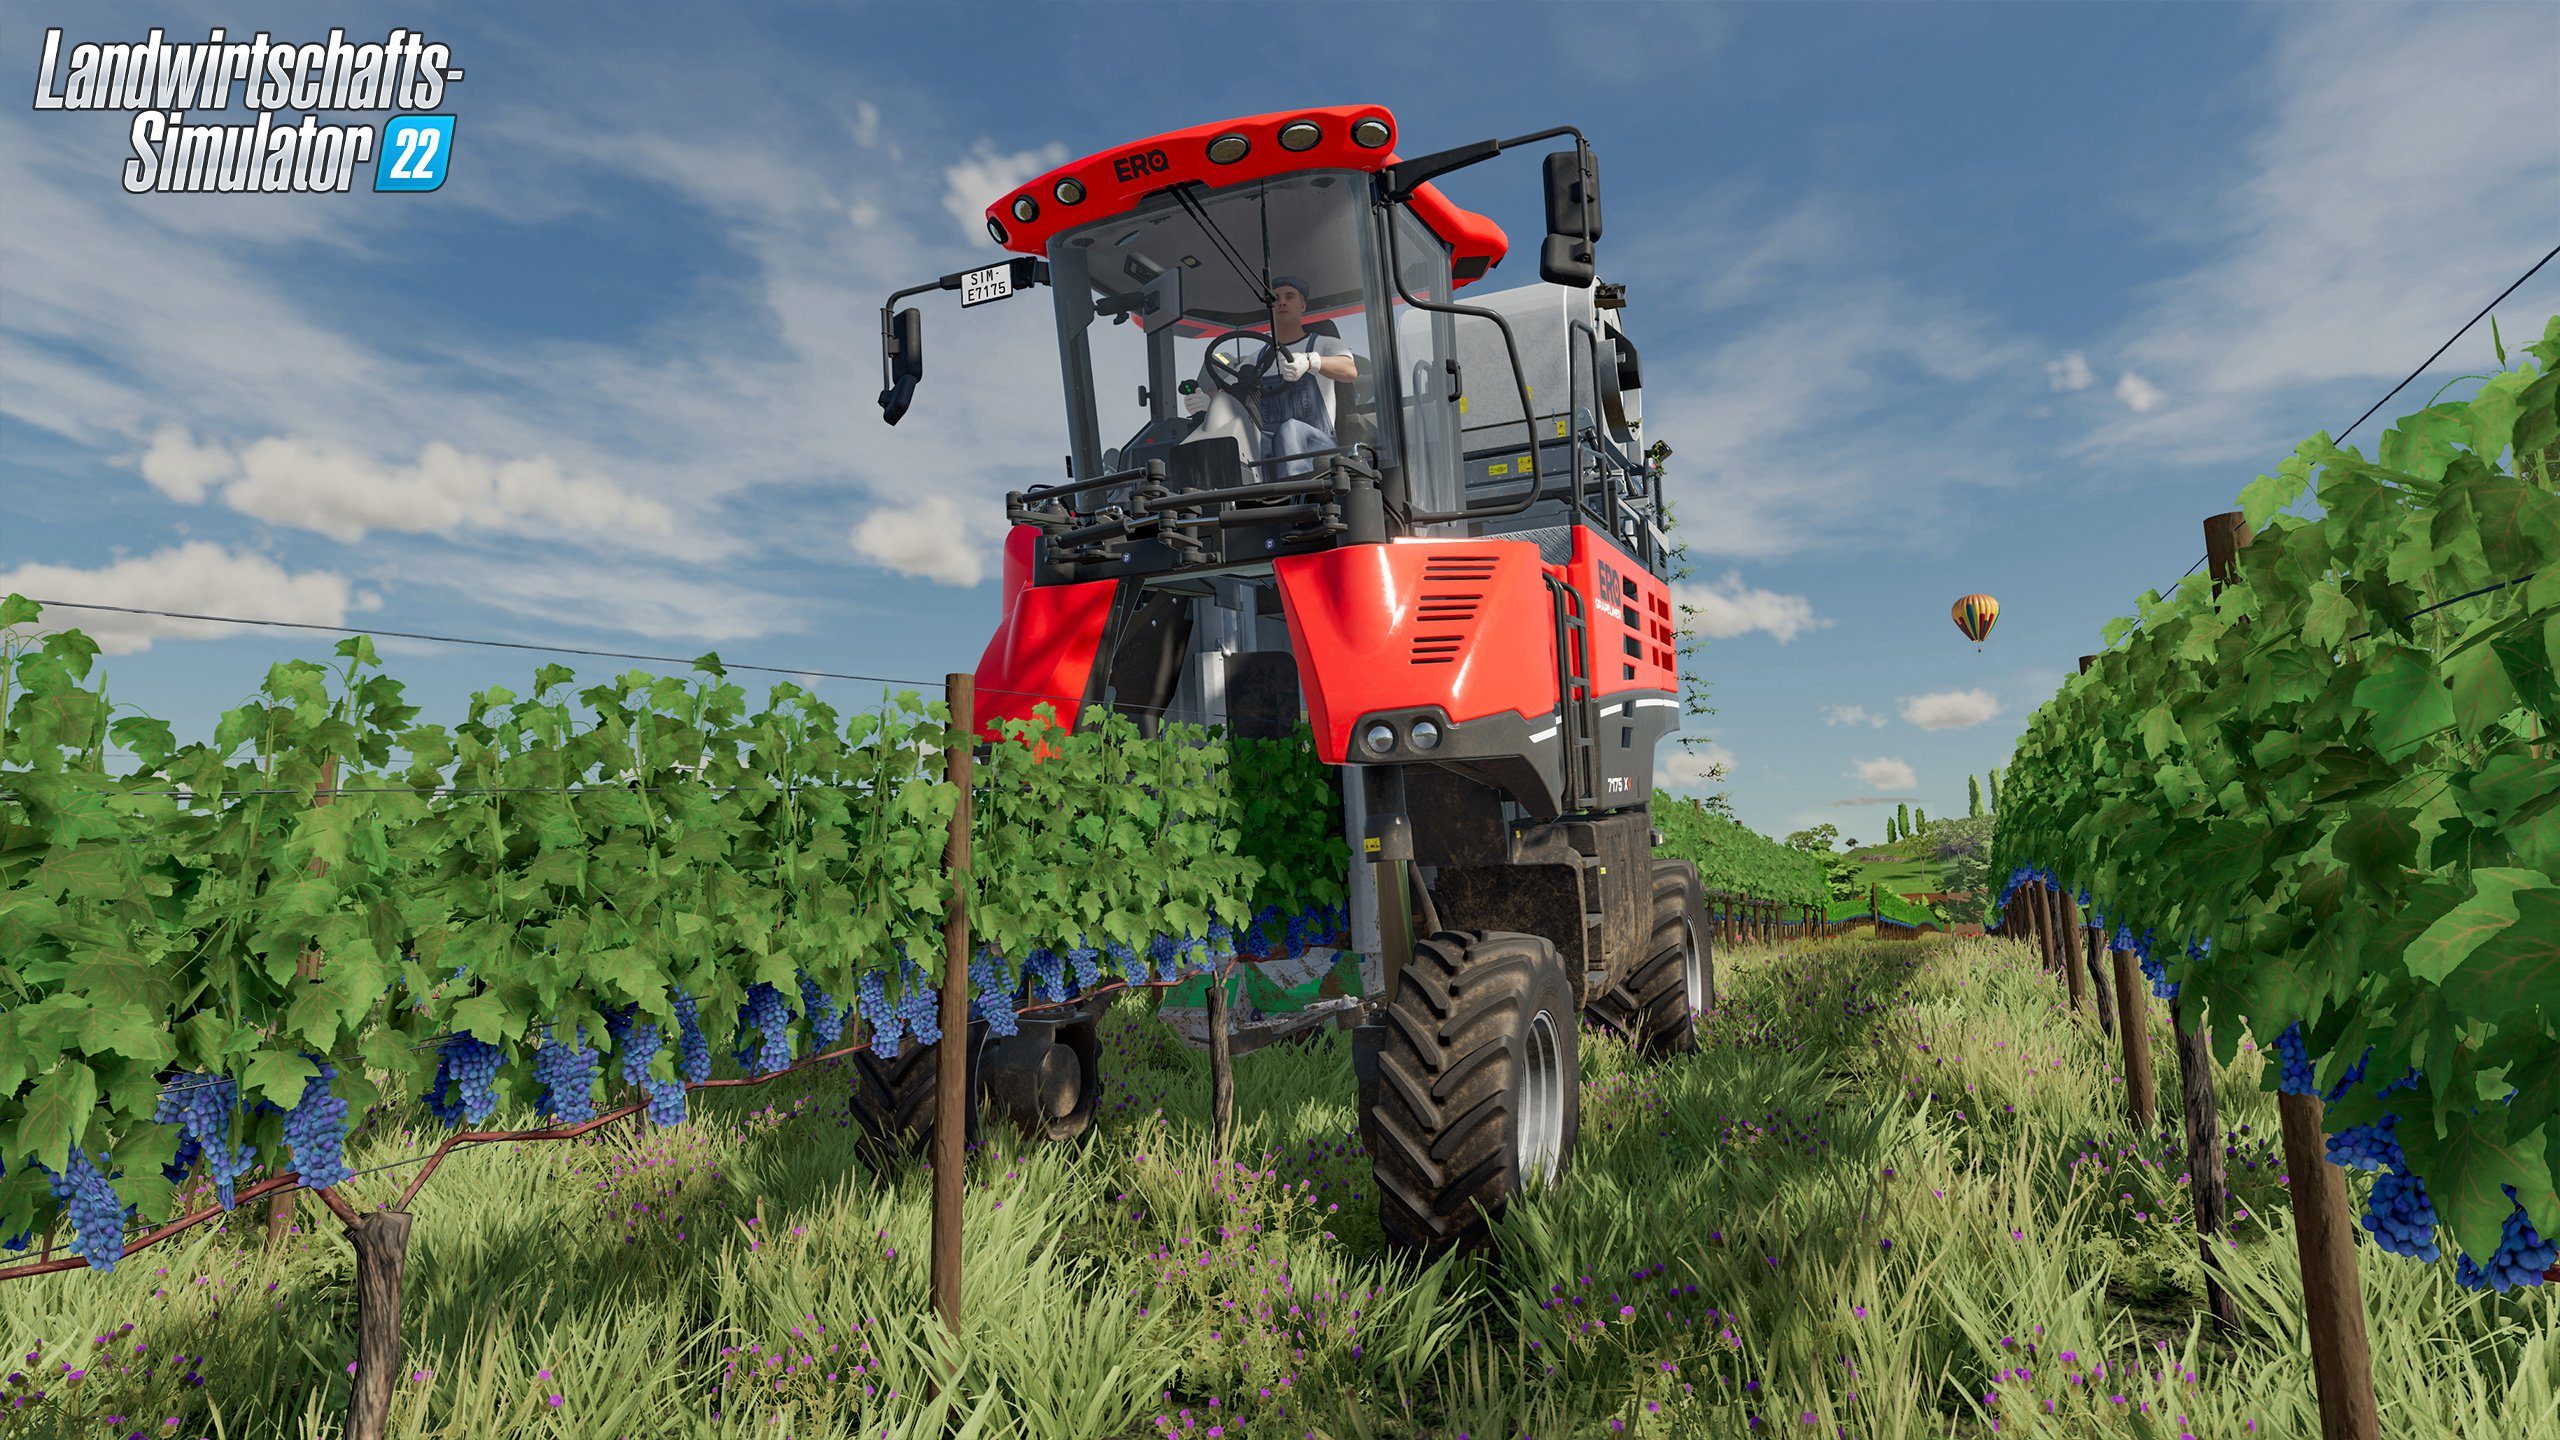 Rundumleuchte Landwirtschafts-Simulator PC 22